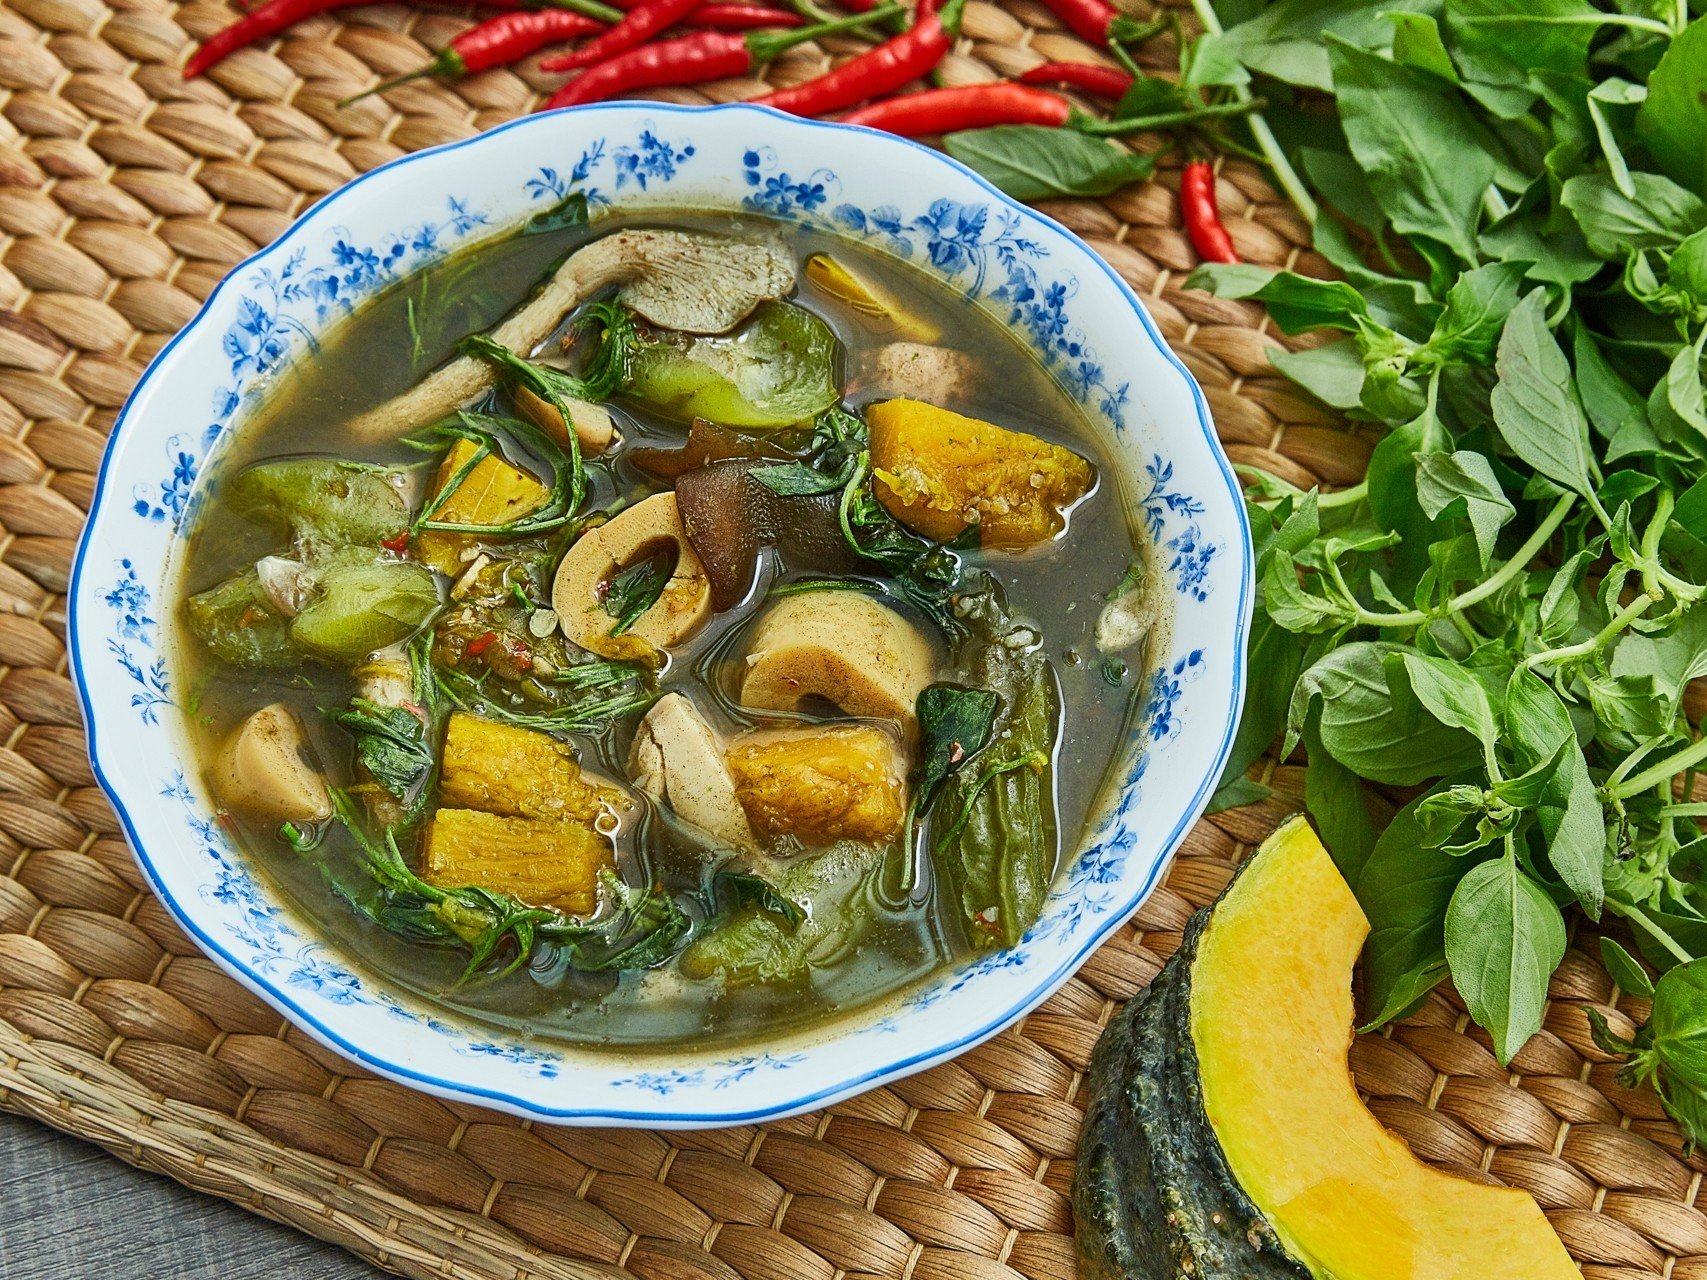 30 สูตร “เมนูผัก” จานเด็ด อร่อยง่าย ๆ แถมยังสุขภาพดี!